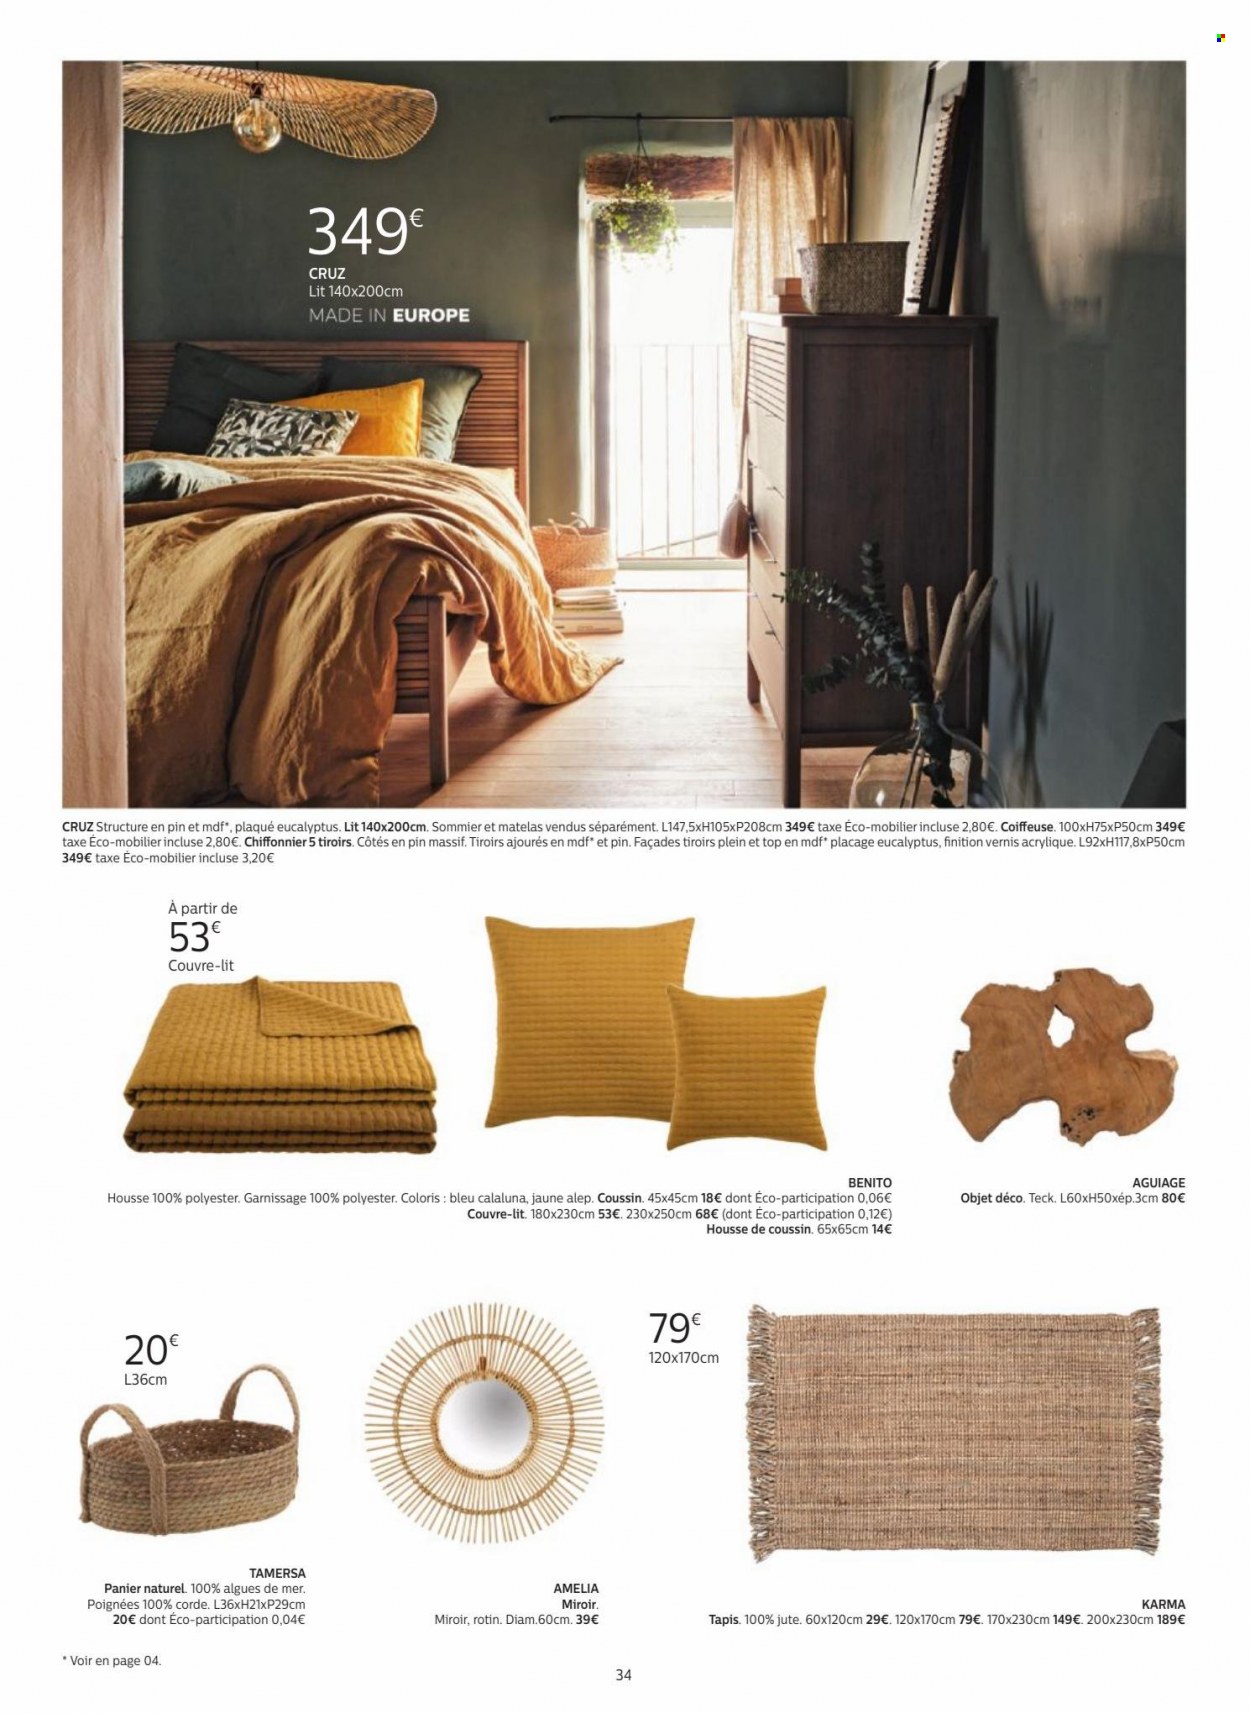 thumbnail - Catalogue alinea - Produits soldés - panier, coussin, couvre lit, housse de coussin, tapis, coiffeuse. Page 34.